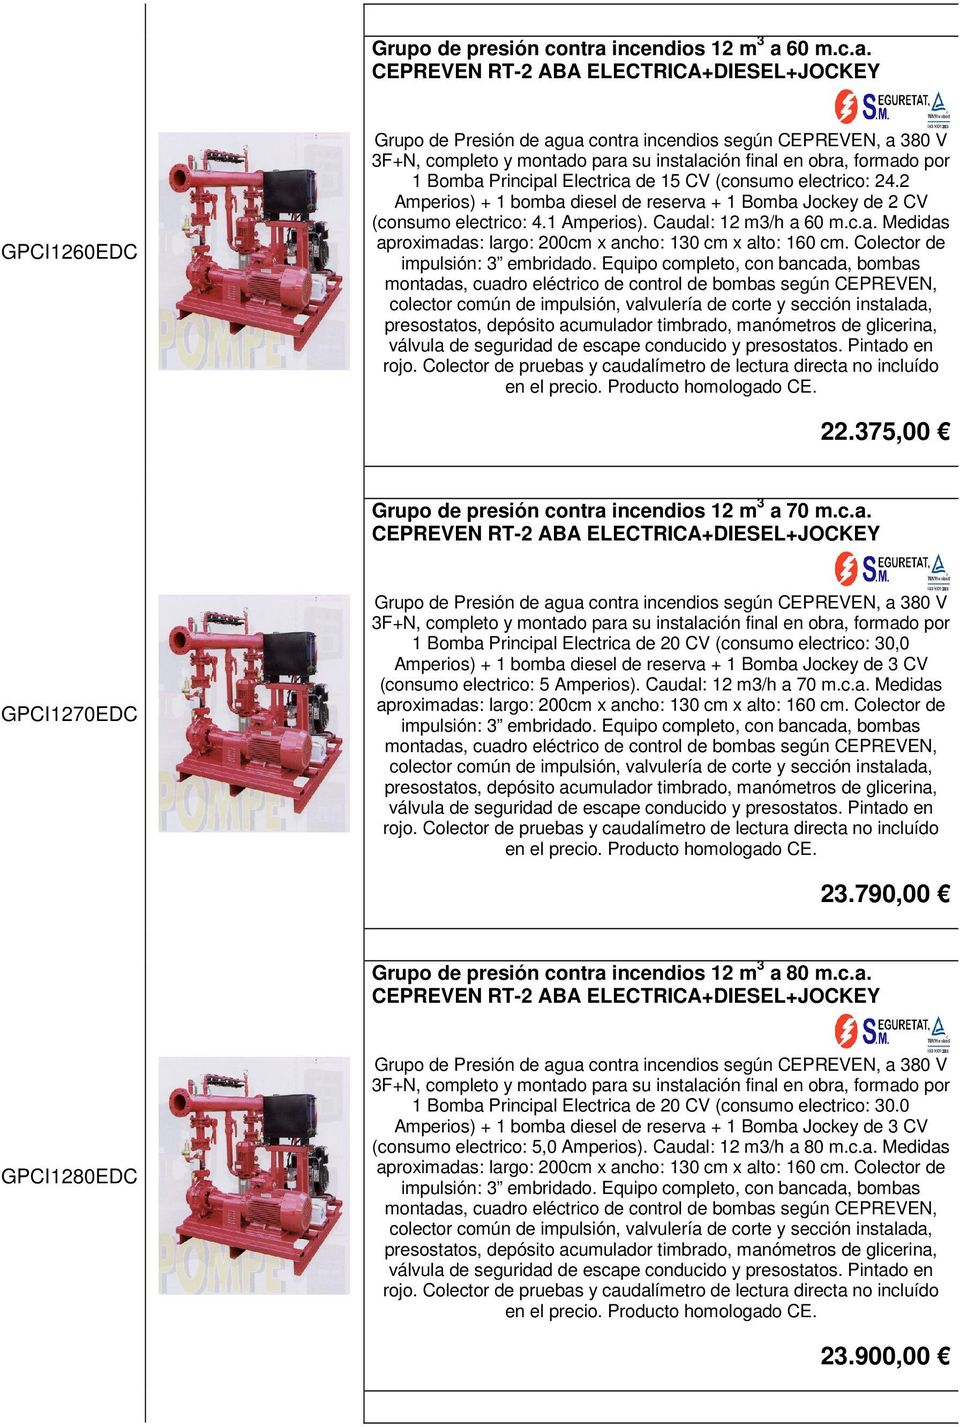 Colector de montadas, cuadro eléctrico de control de bombas según CEPREVEN, rojo. Colector de pruebas y caudalímetro de lectura directa no incluído en el precio. 22.